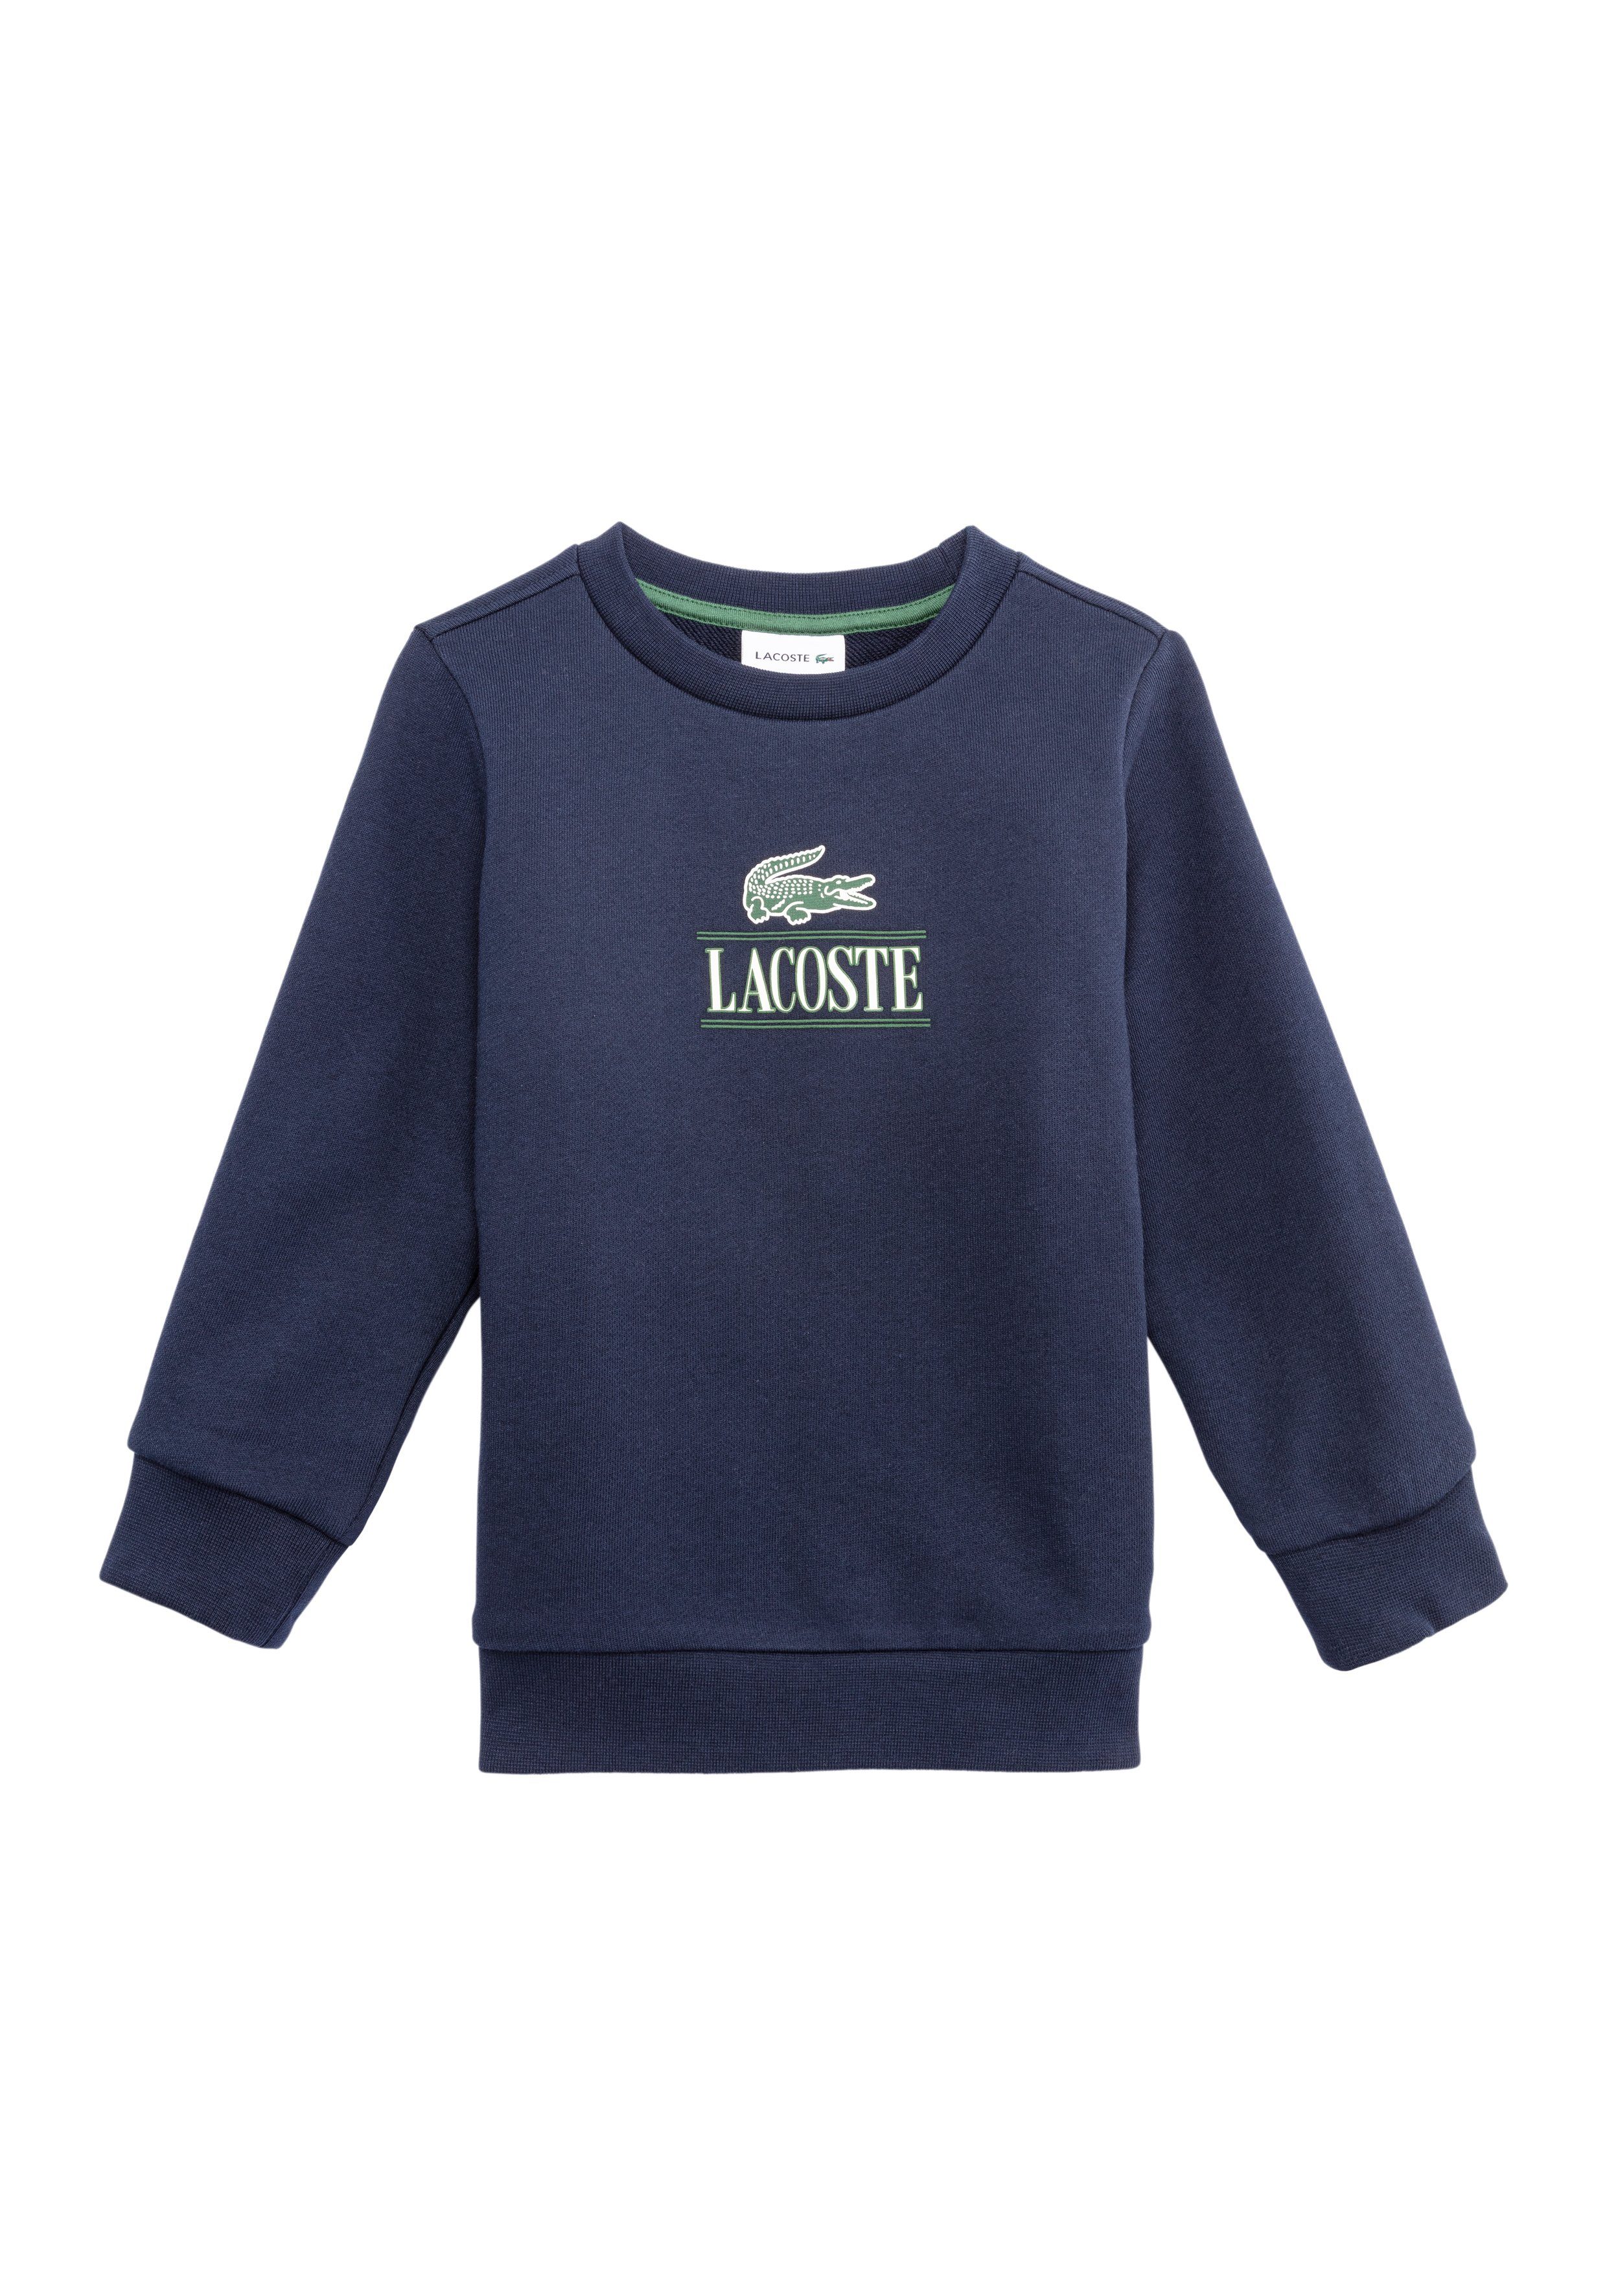 Lacoste Sweater mit Lacoste Aufdruck | Sweatshirts